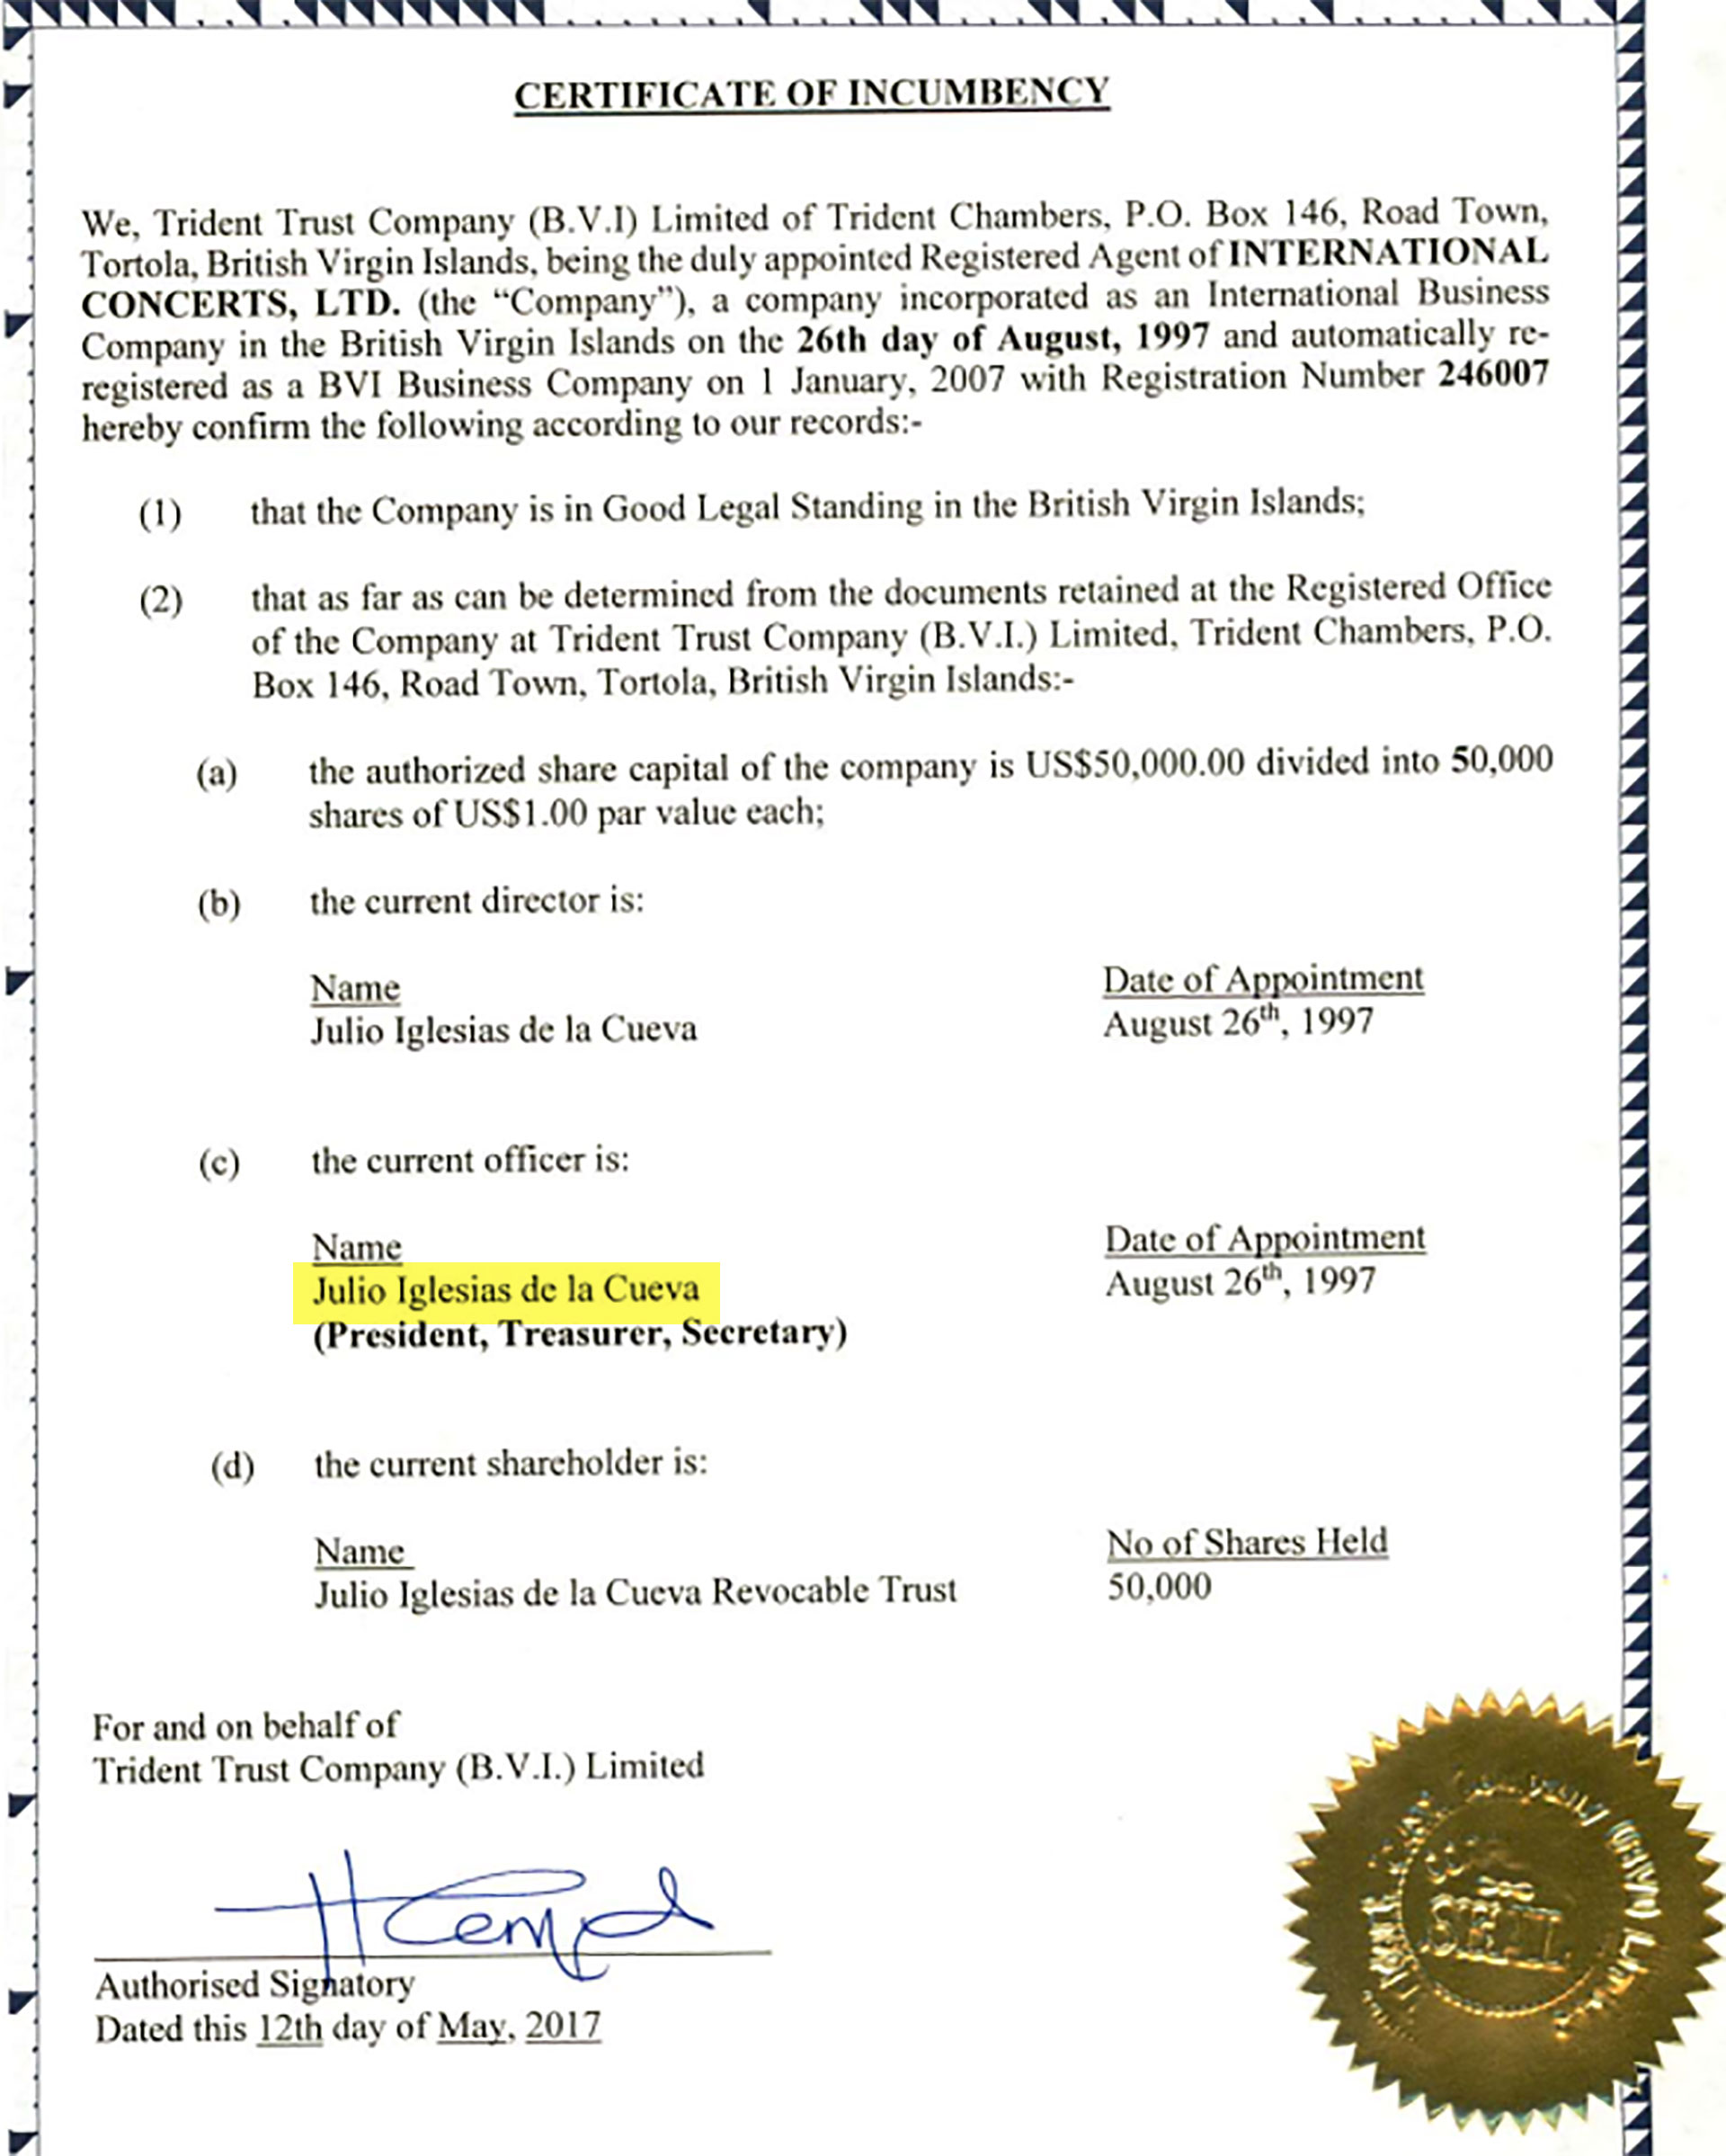 El certificado de una de las offshore de Julio Iglesias, International Concerts Ltd, creada en las Islas Vírgenes Británicas